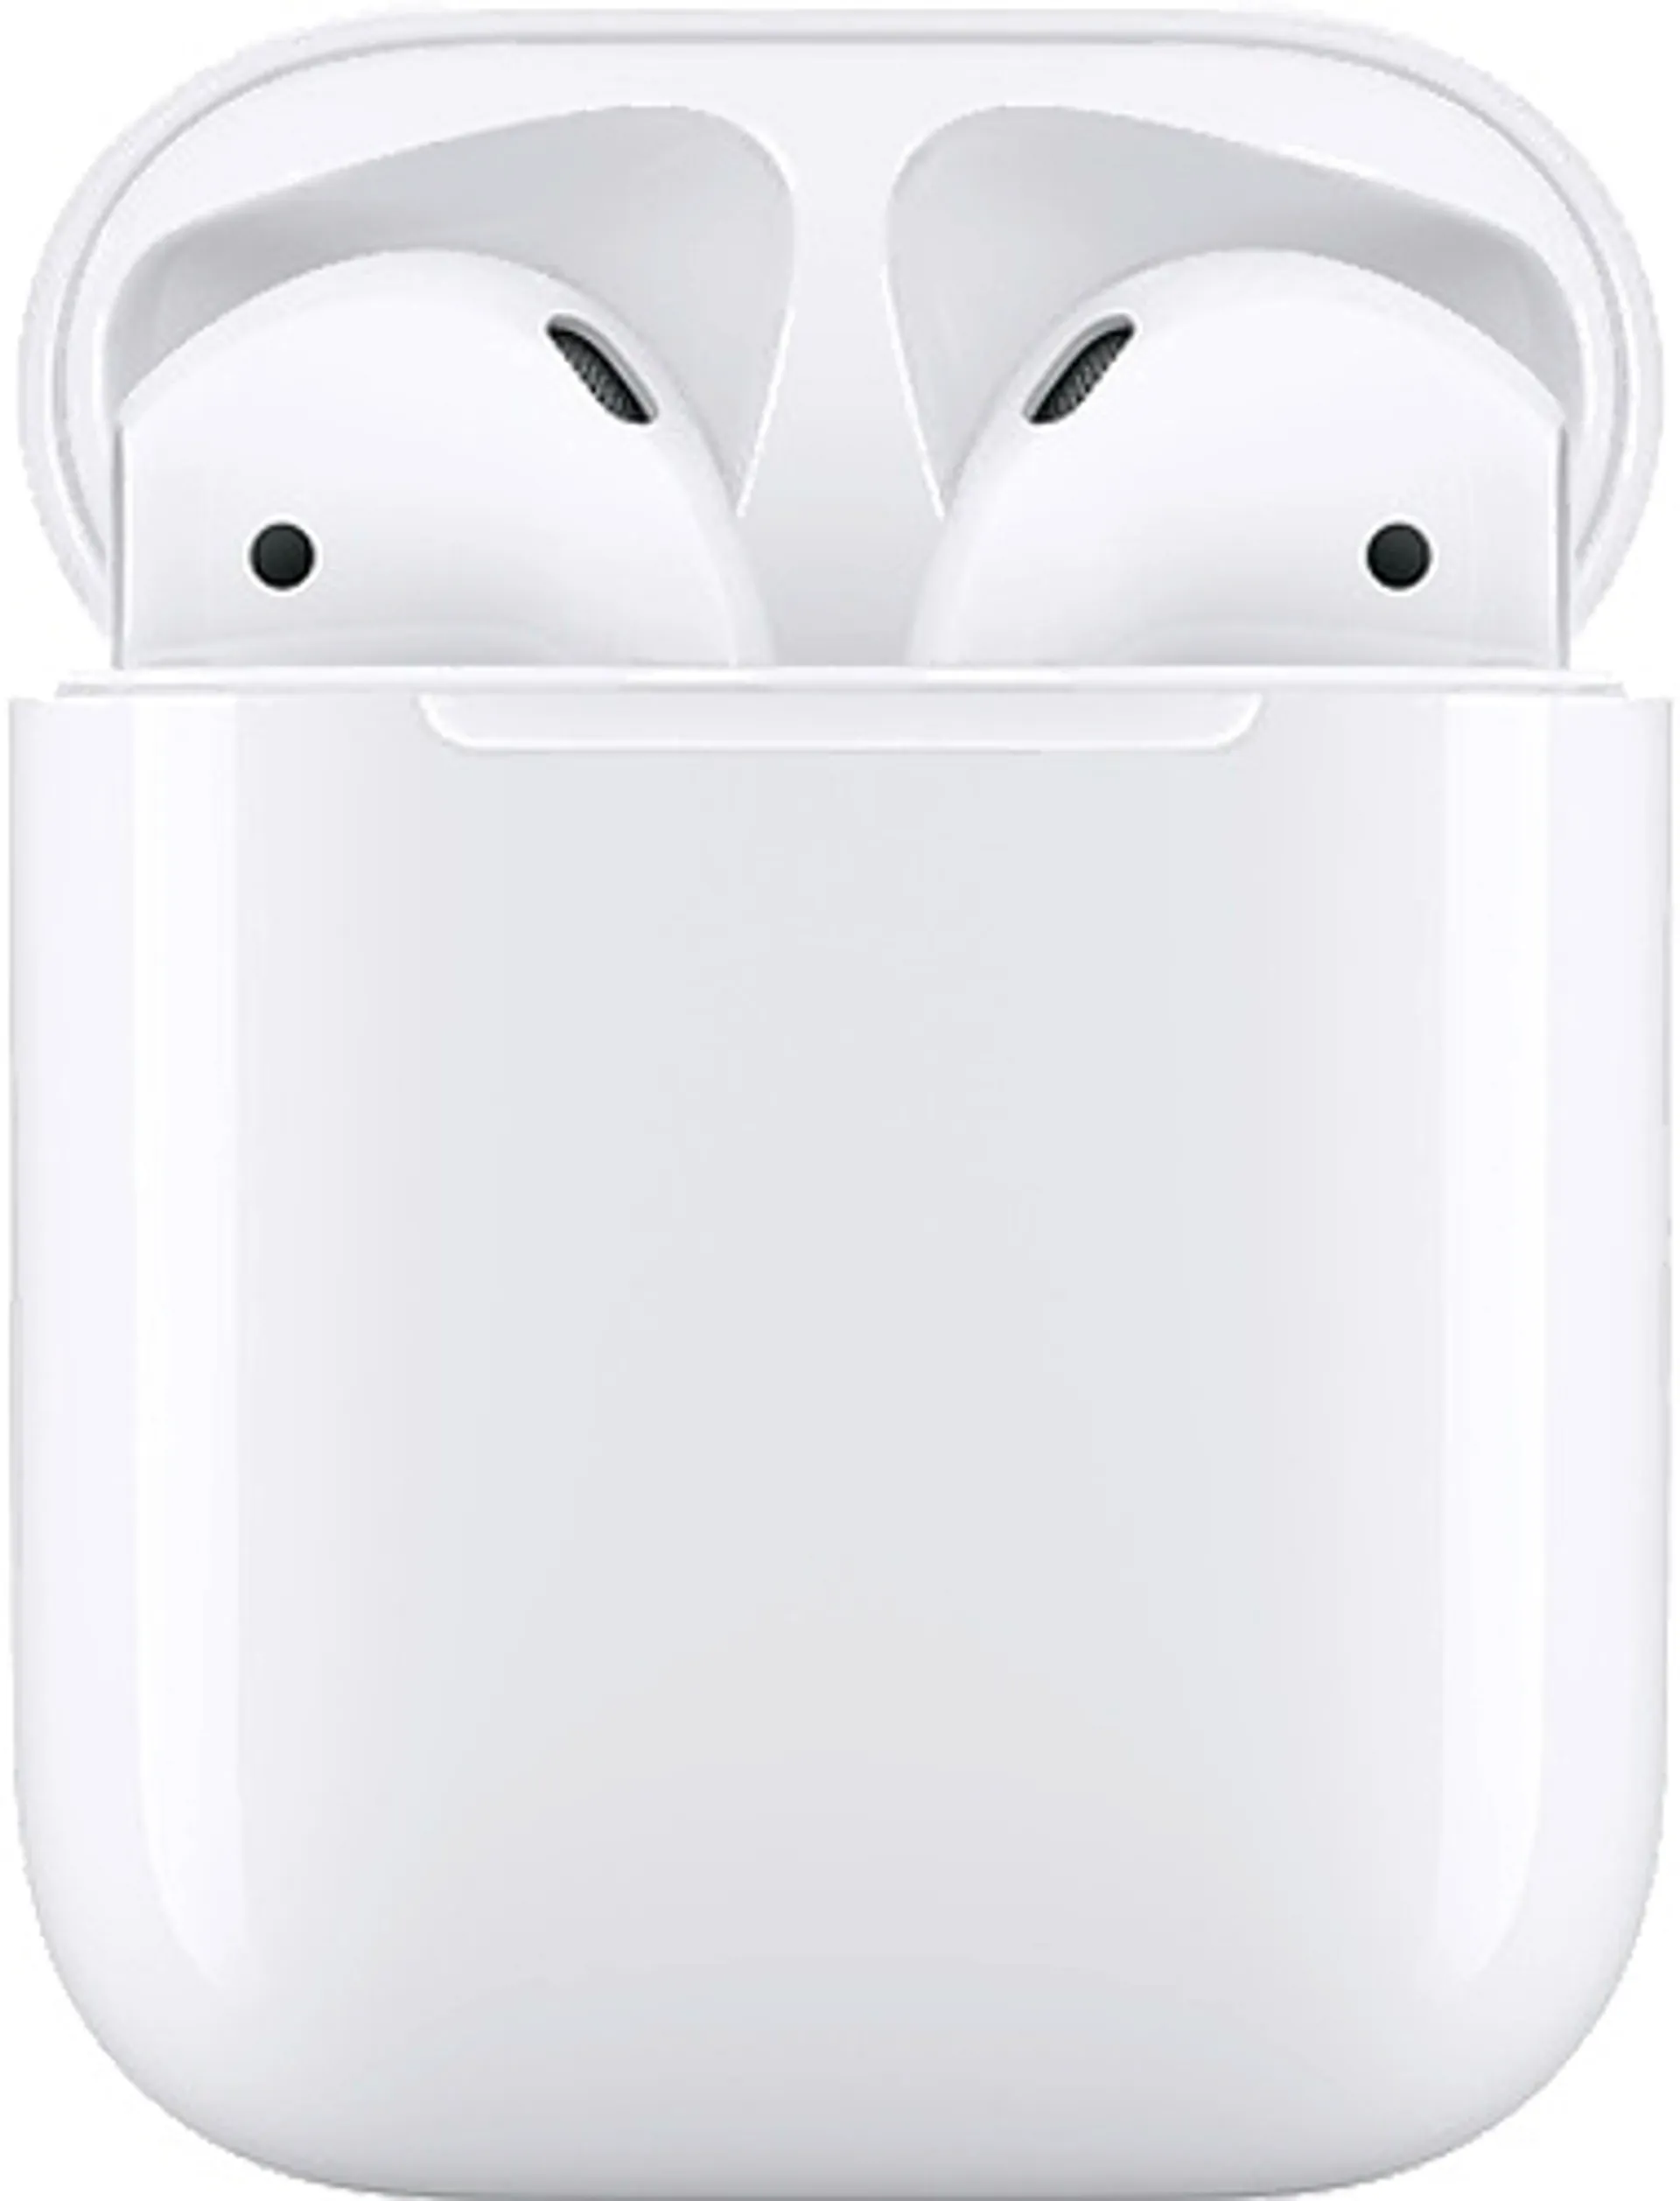 Apple AirPods langattomat kuulokkeet valkoinen (2. sukupolvi) - 1